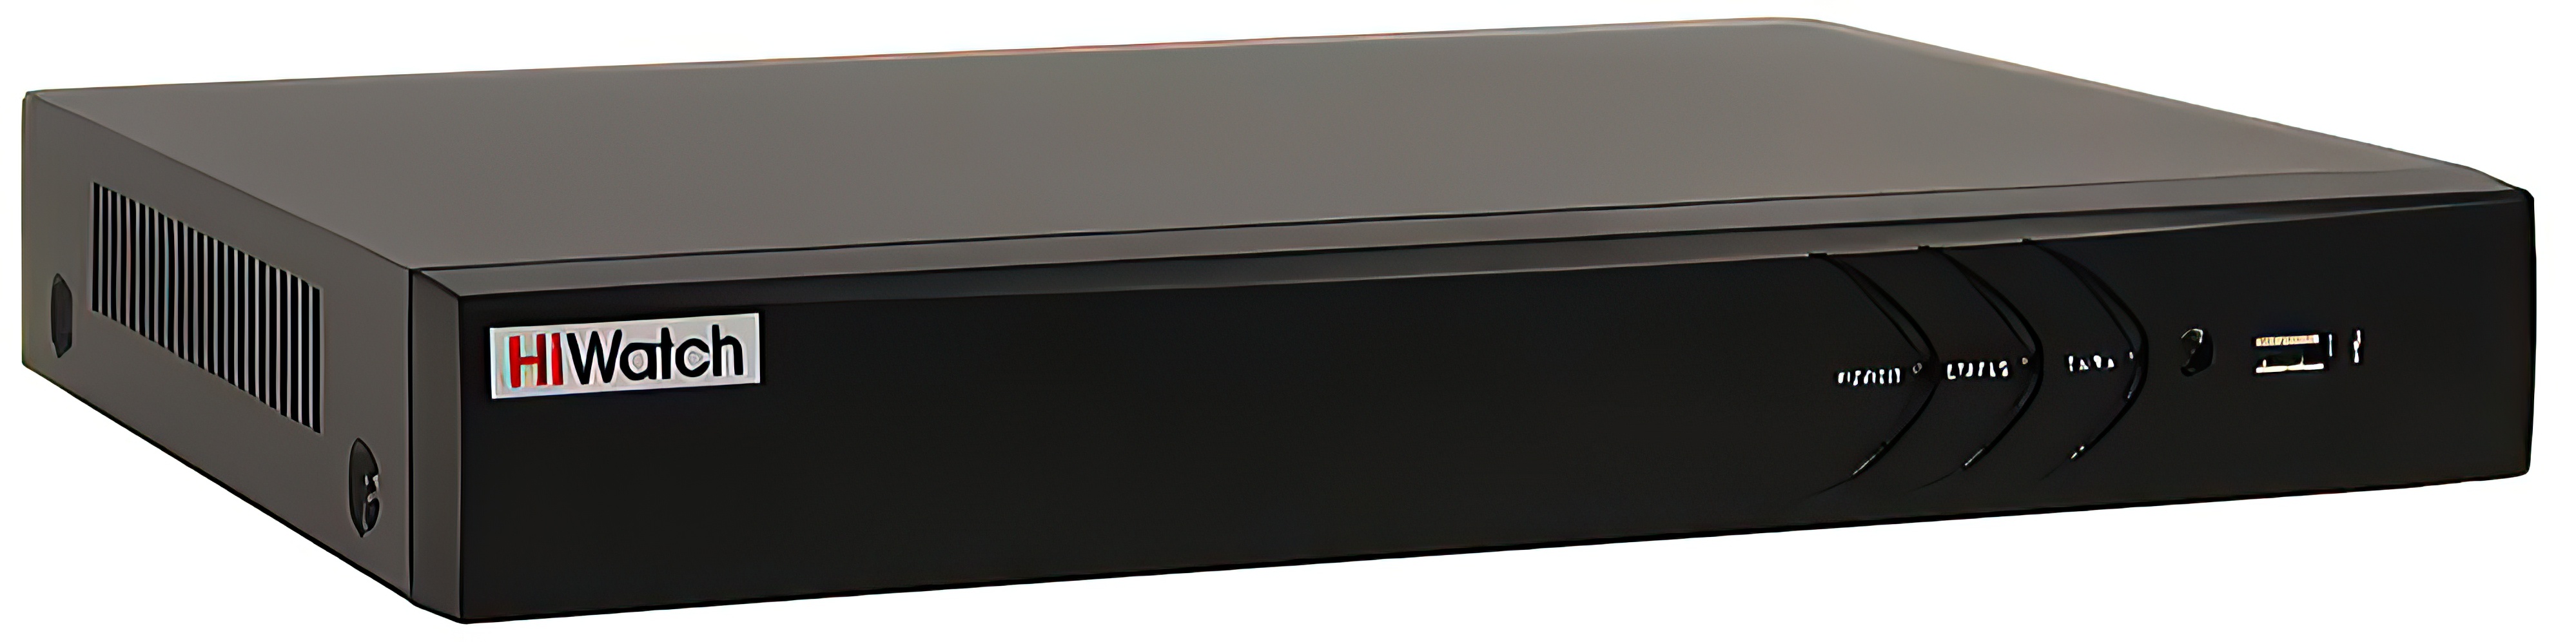 8-канальный гибридный HD-TVI видеорегистратор HiWatch DS-H308QAС гибридный видеорегистратор pst a2116hx